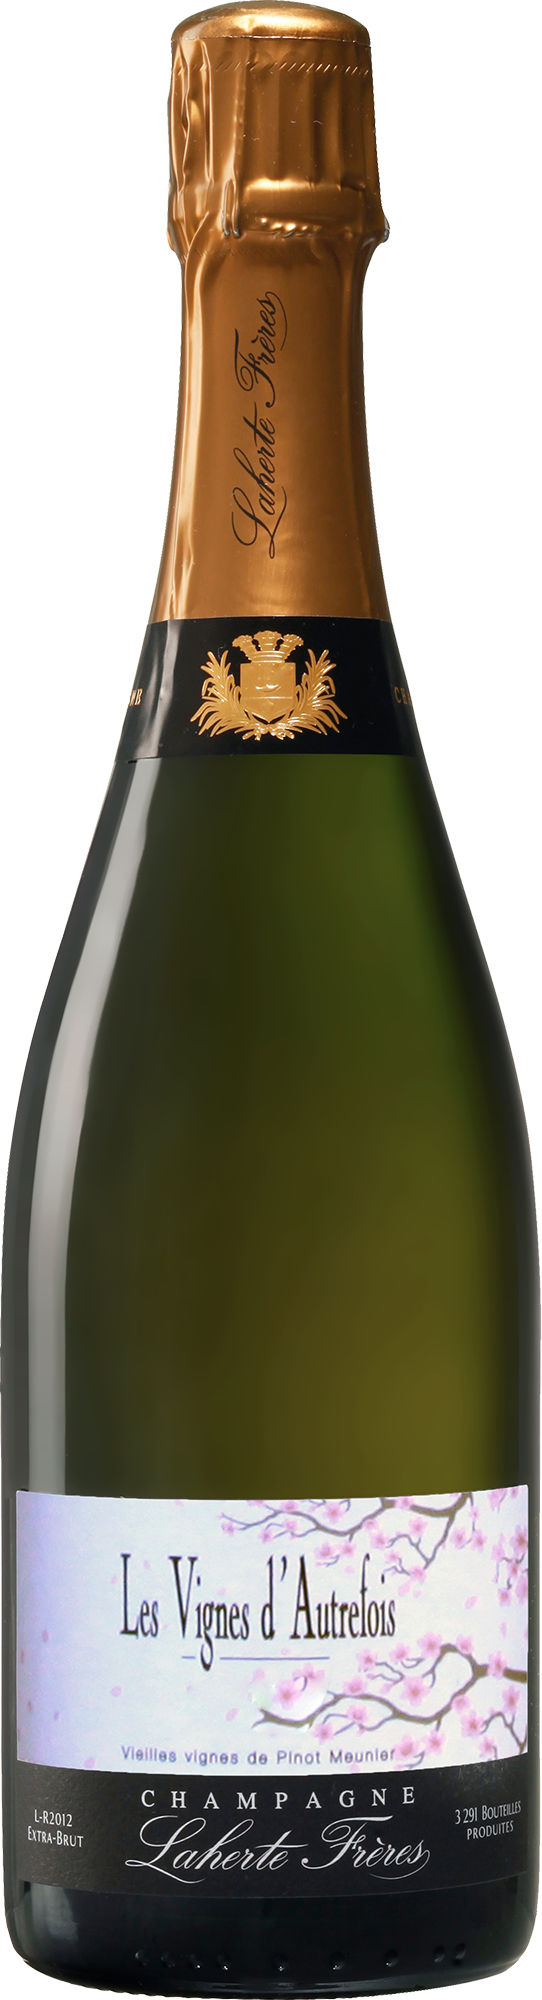 Champagne Laherte Frères Les Vignes d'Autrefois 2019 (Disg. Nov 2022)